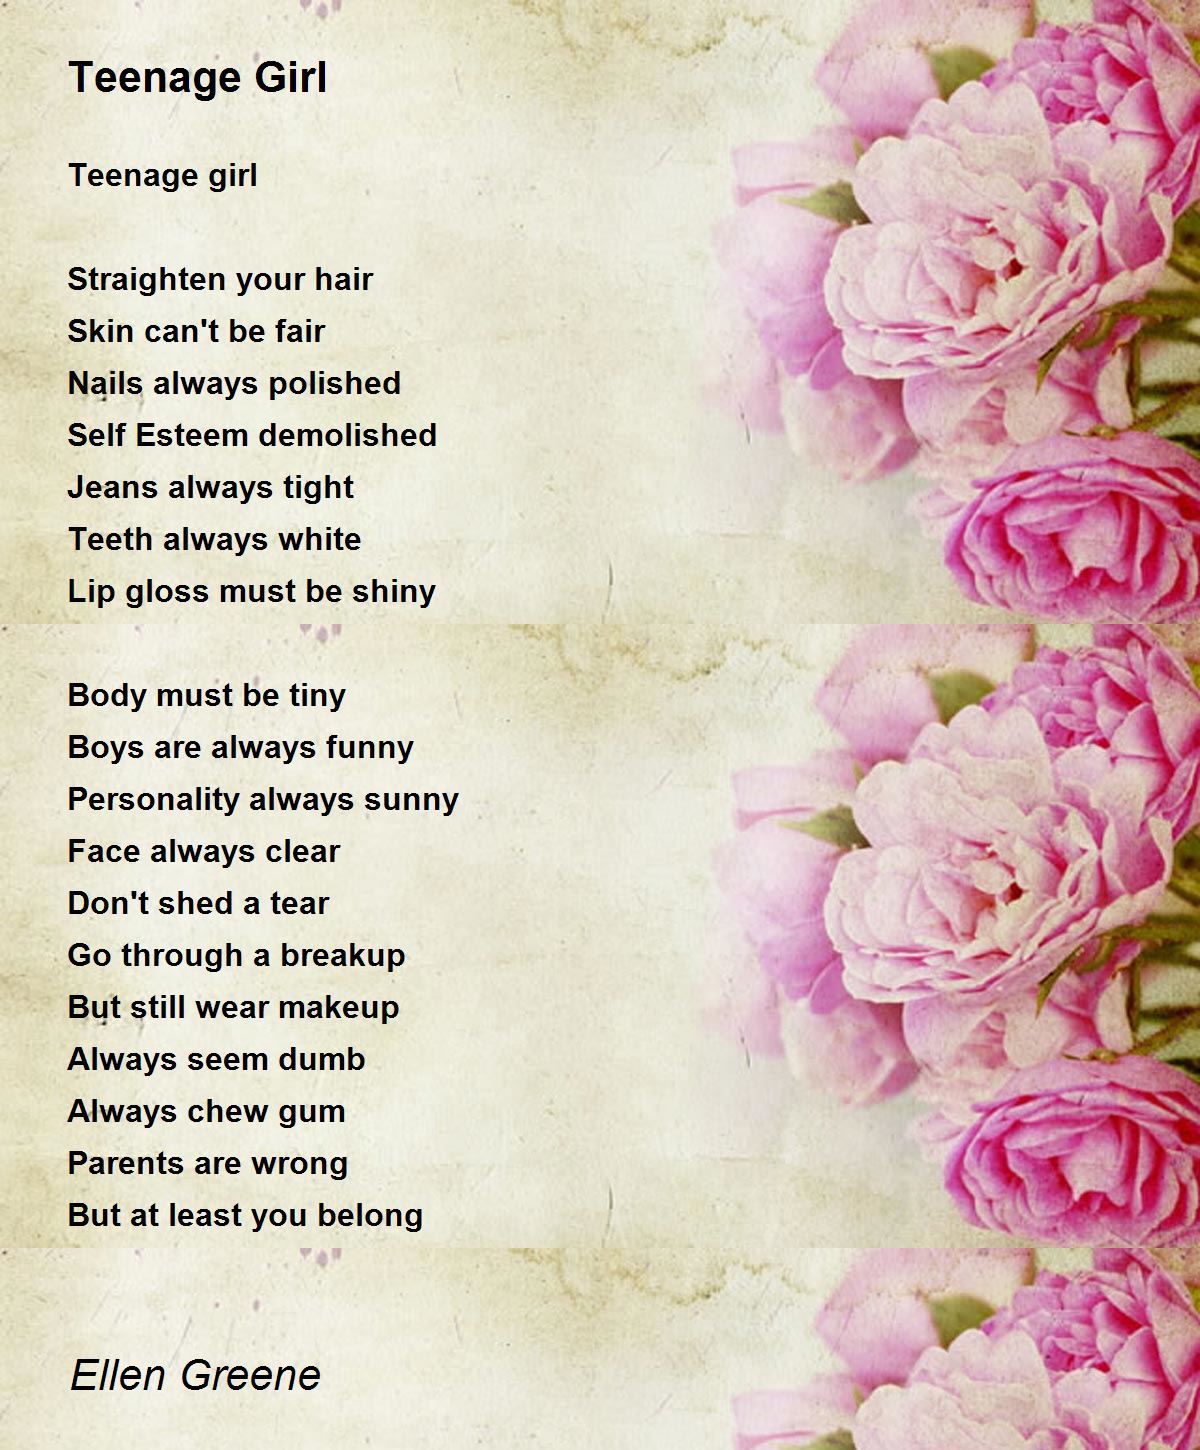 Teenage Girl - Teenage Girl Poem by Ellen Greene